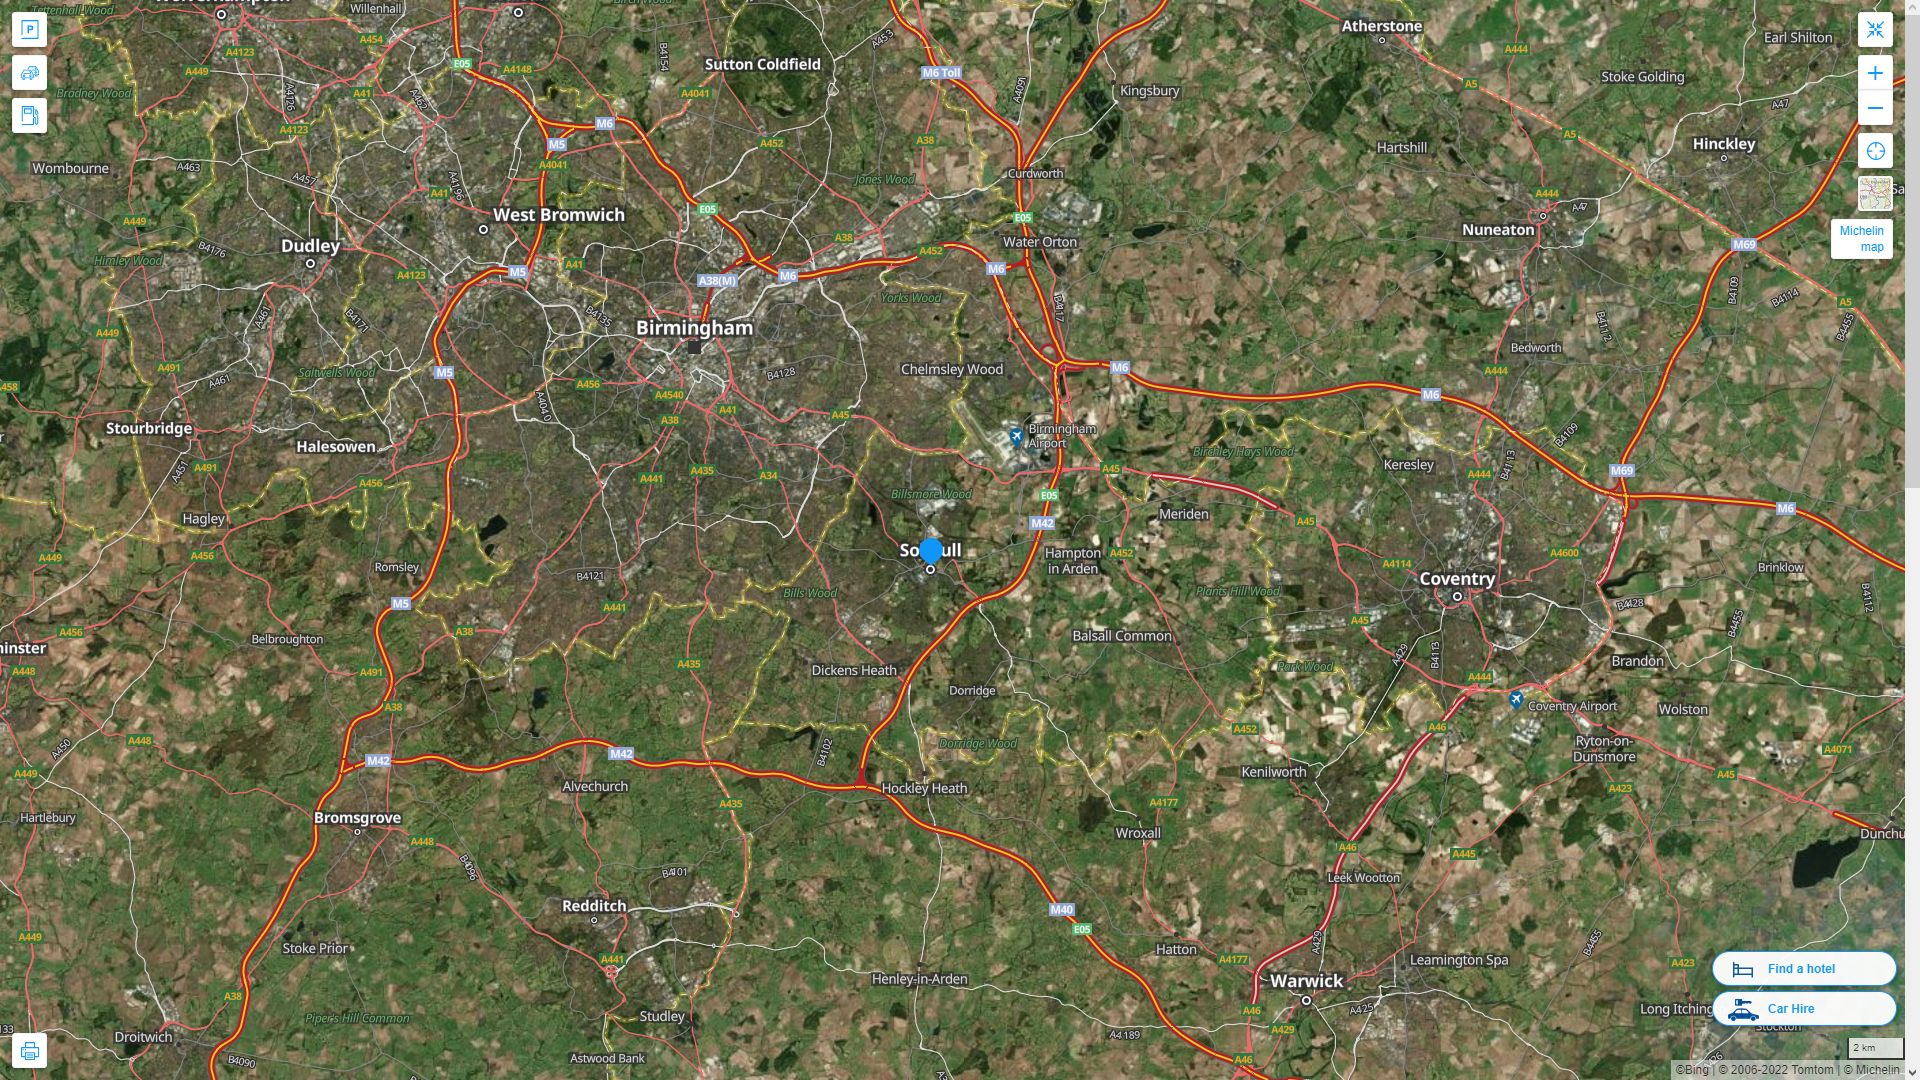 Solihull Royaume Uni Autoroute et carte routiere avec vue satellite